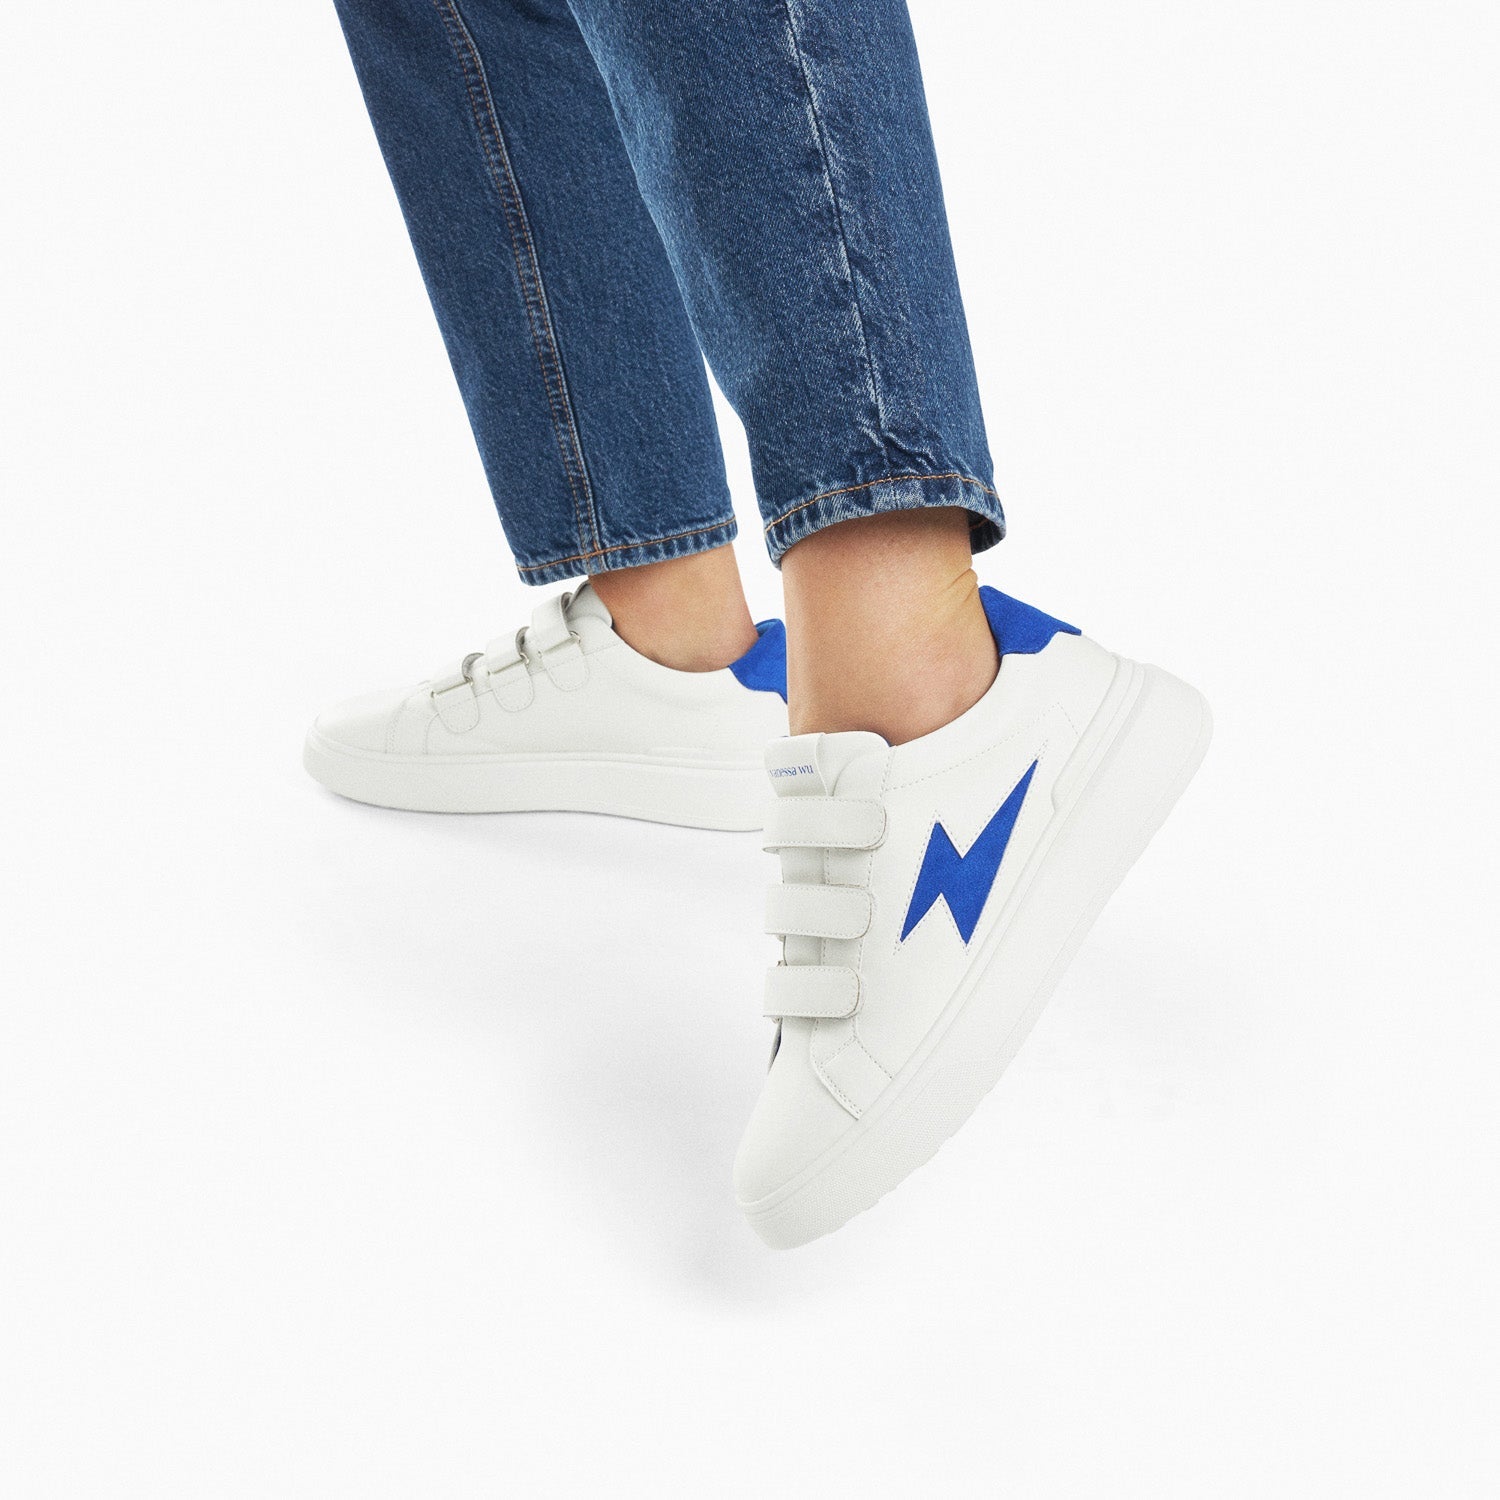 Sneakers blanches à scratchs femme Vanessa Wu avec découpe éclair bleu électrique et semelle épaisse